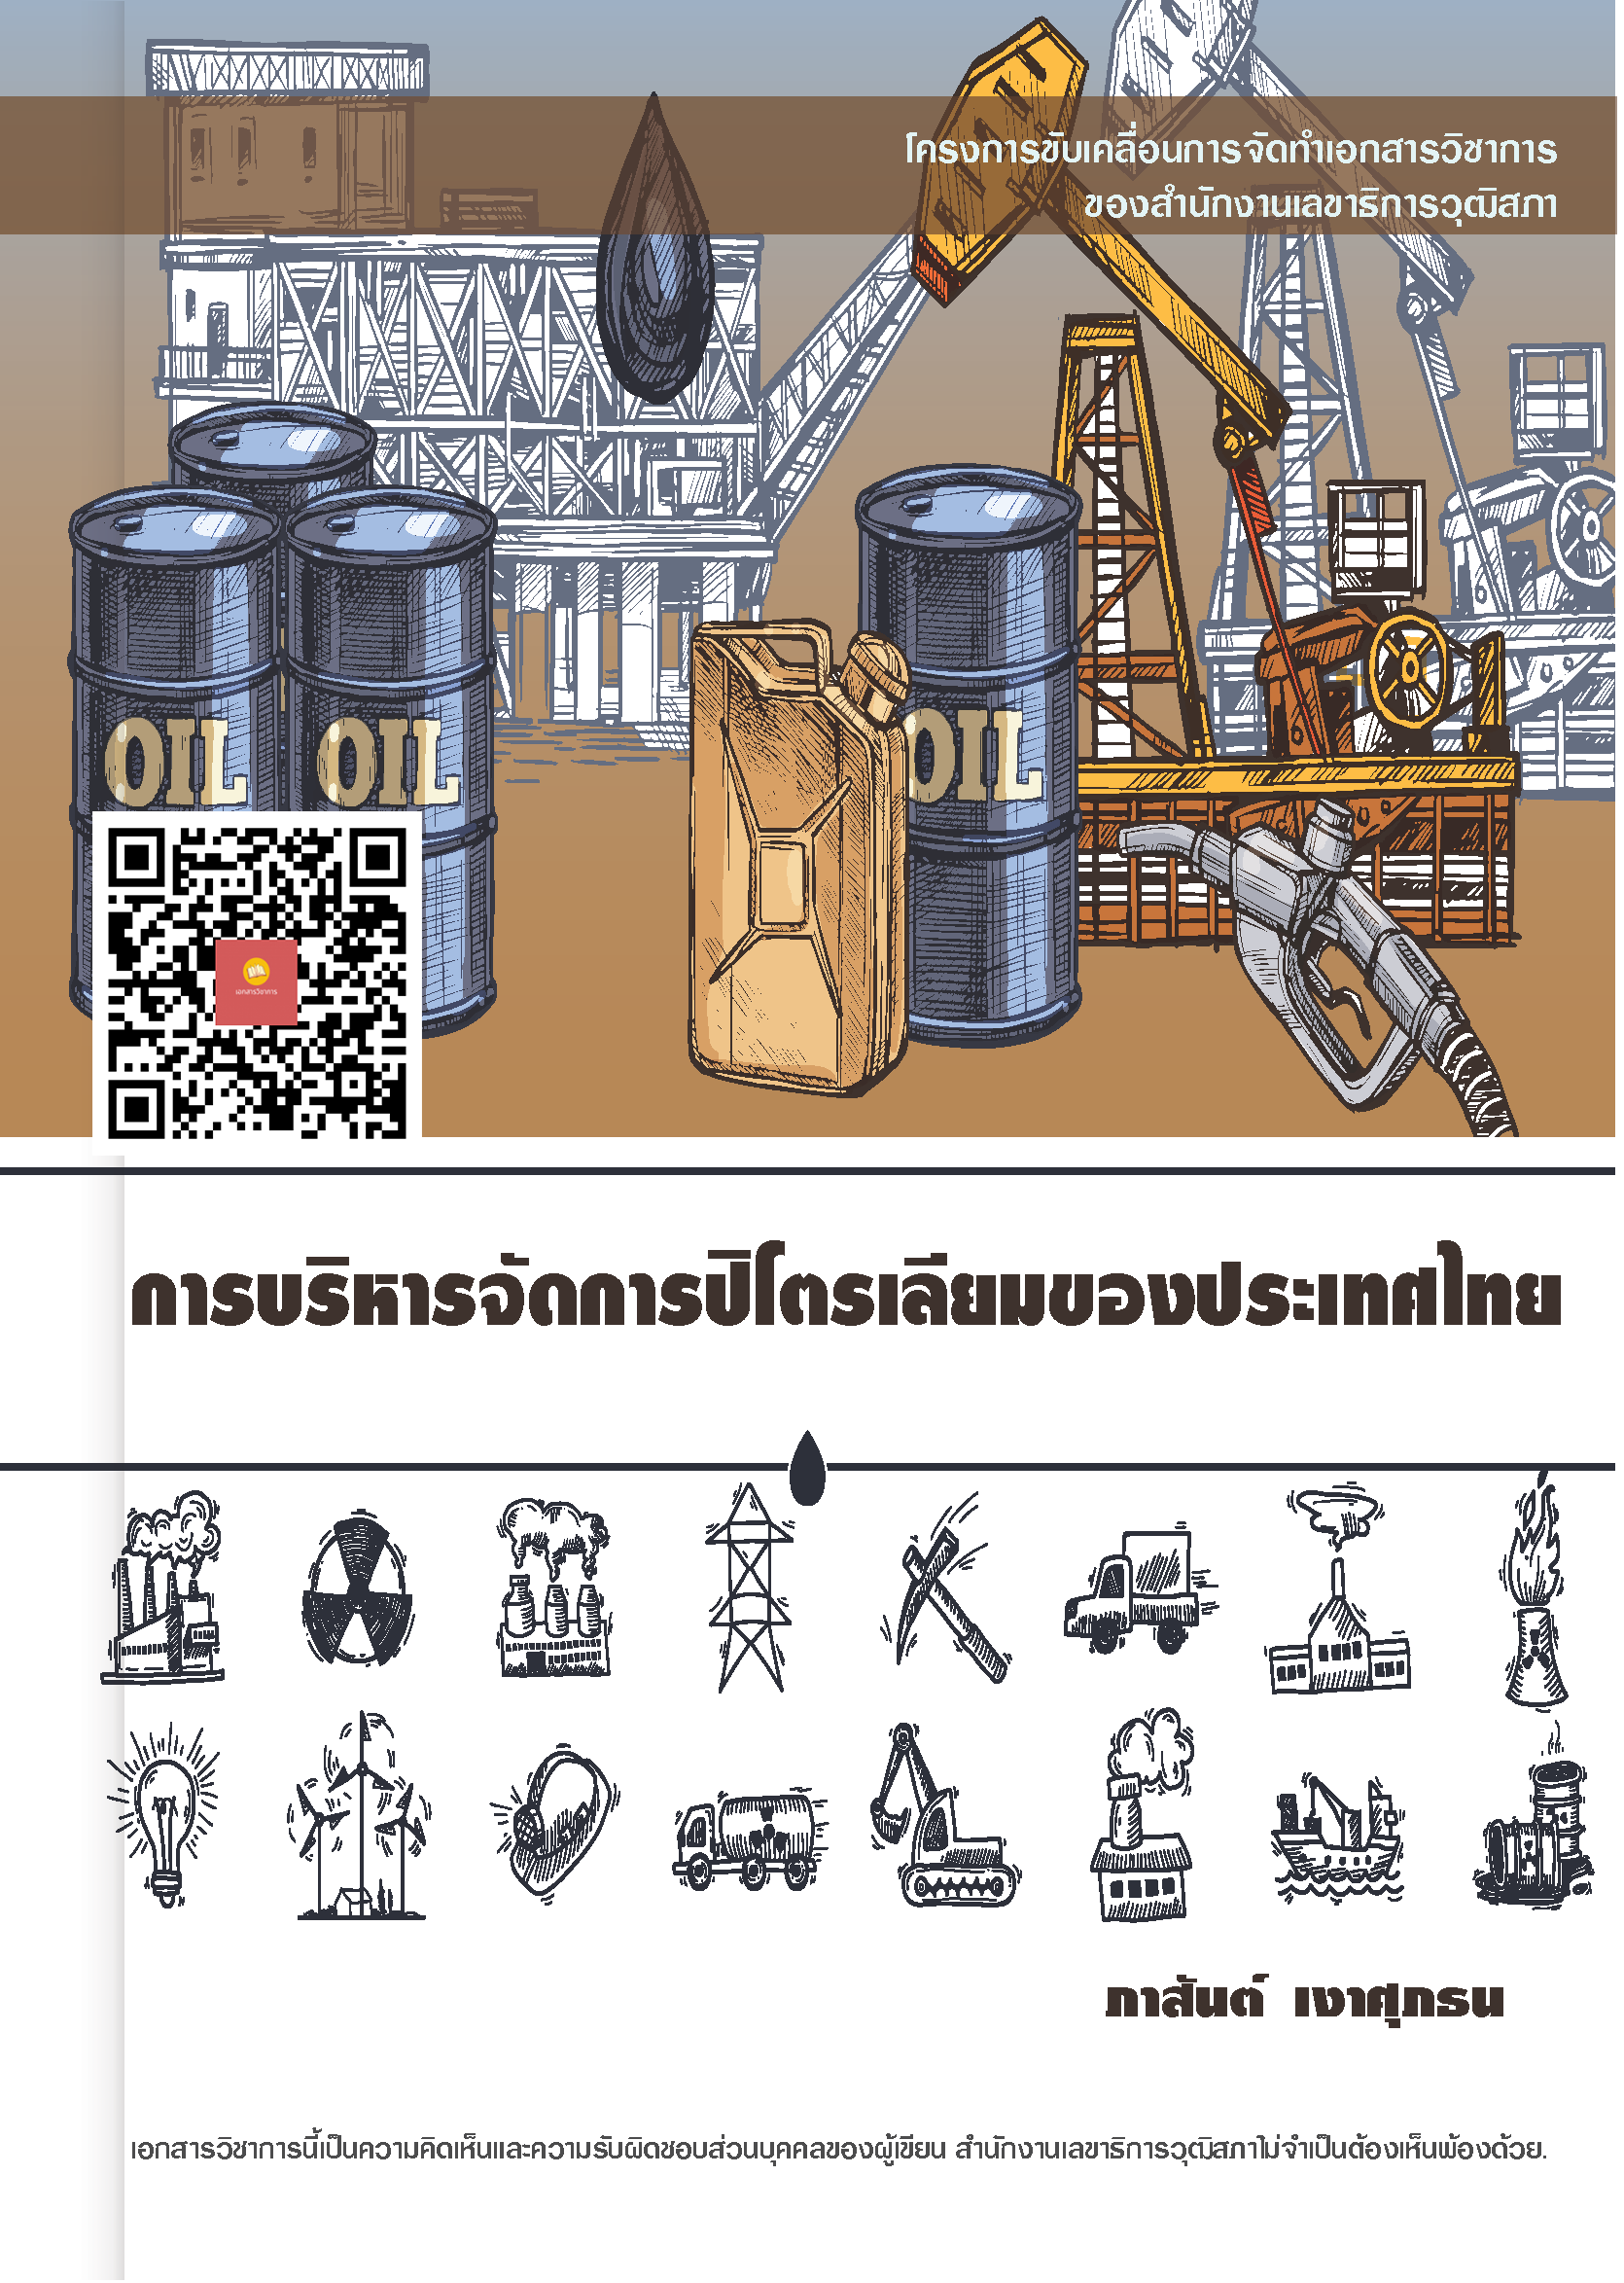 บทความทางวิชาการ เรื่อง "การบริหารจัดการปิโตรเลียมของประเทศไทย"